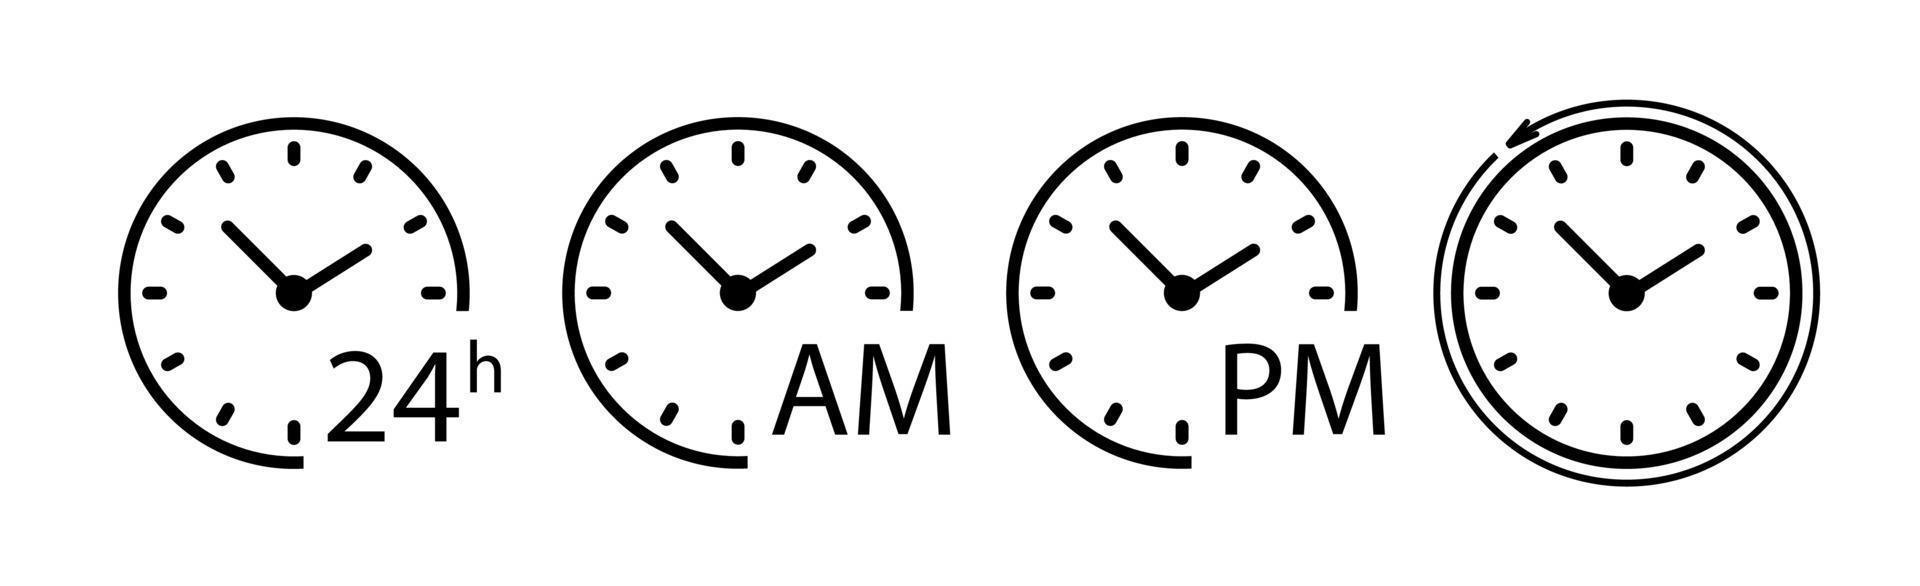 conjunto de iconos de tiempo y reloj redondo, icono de flecha circular - vector